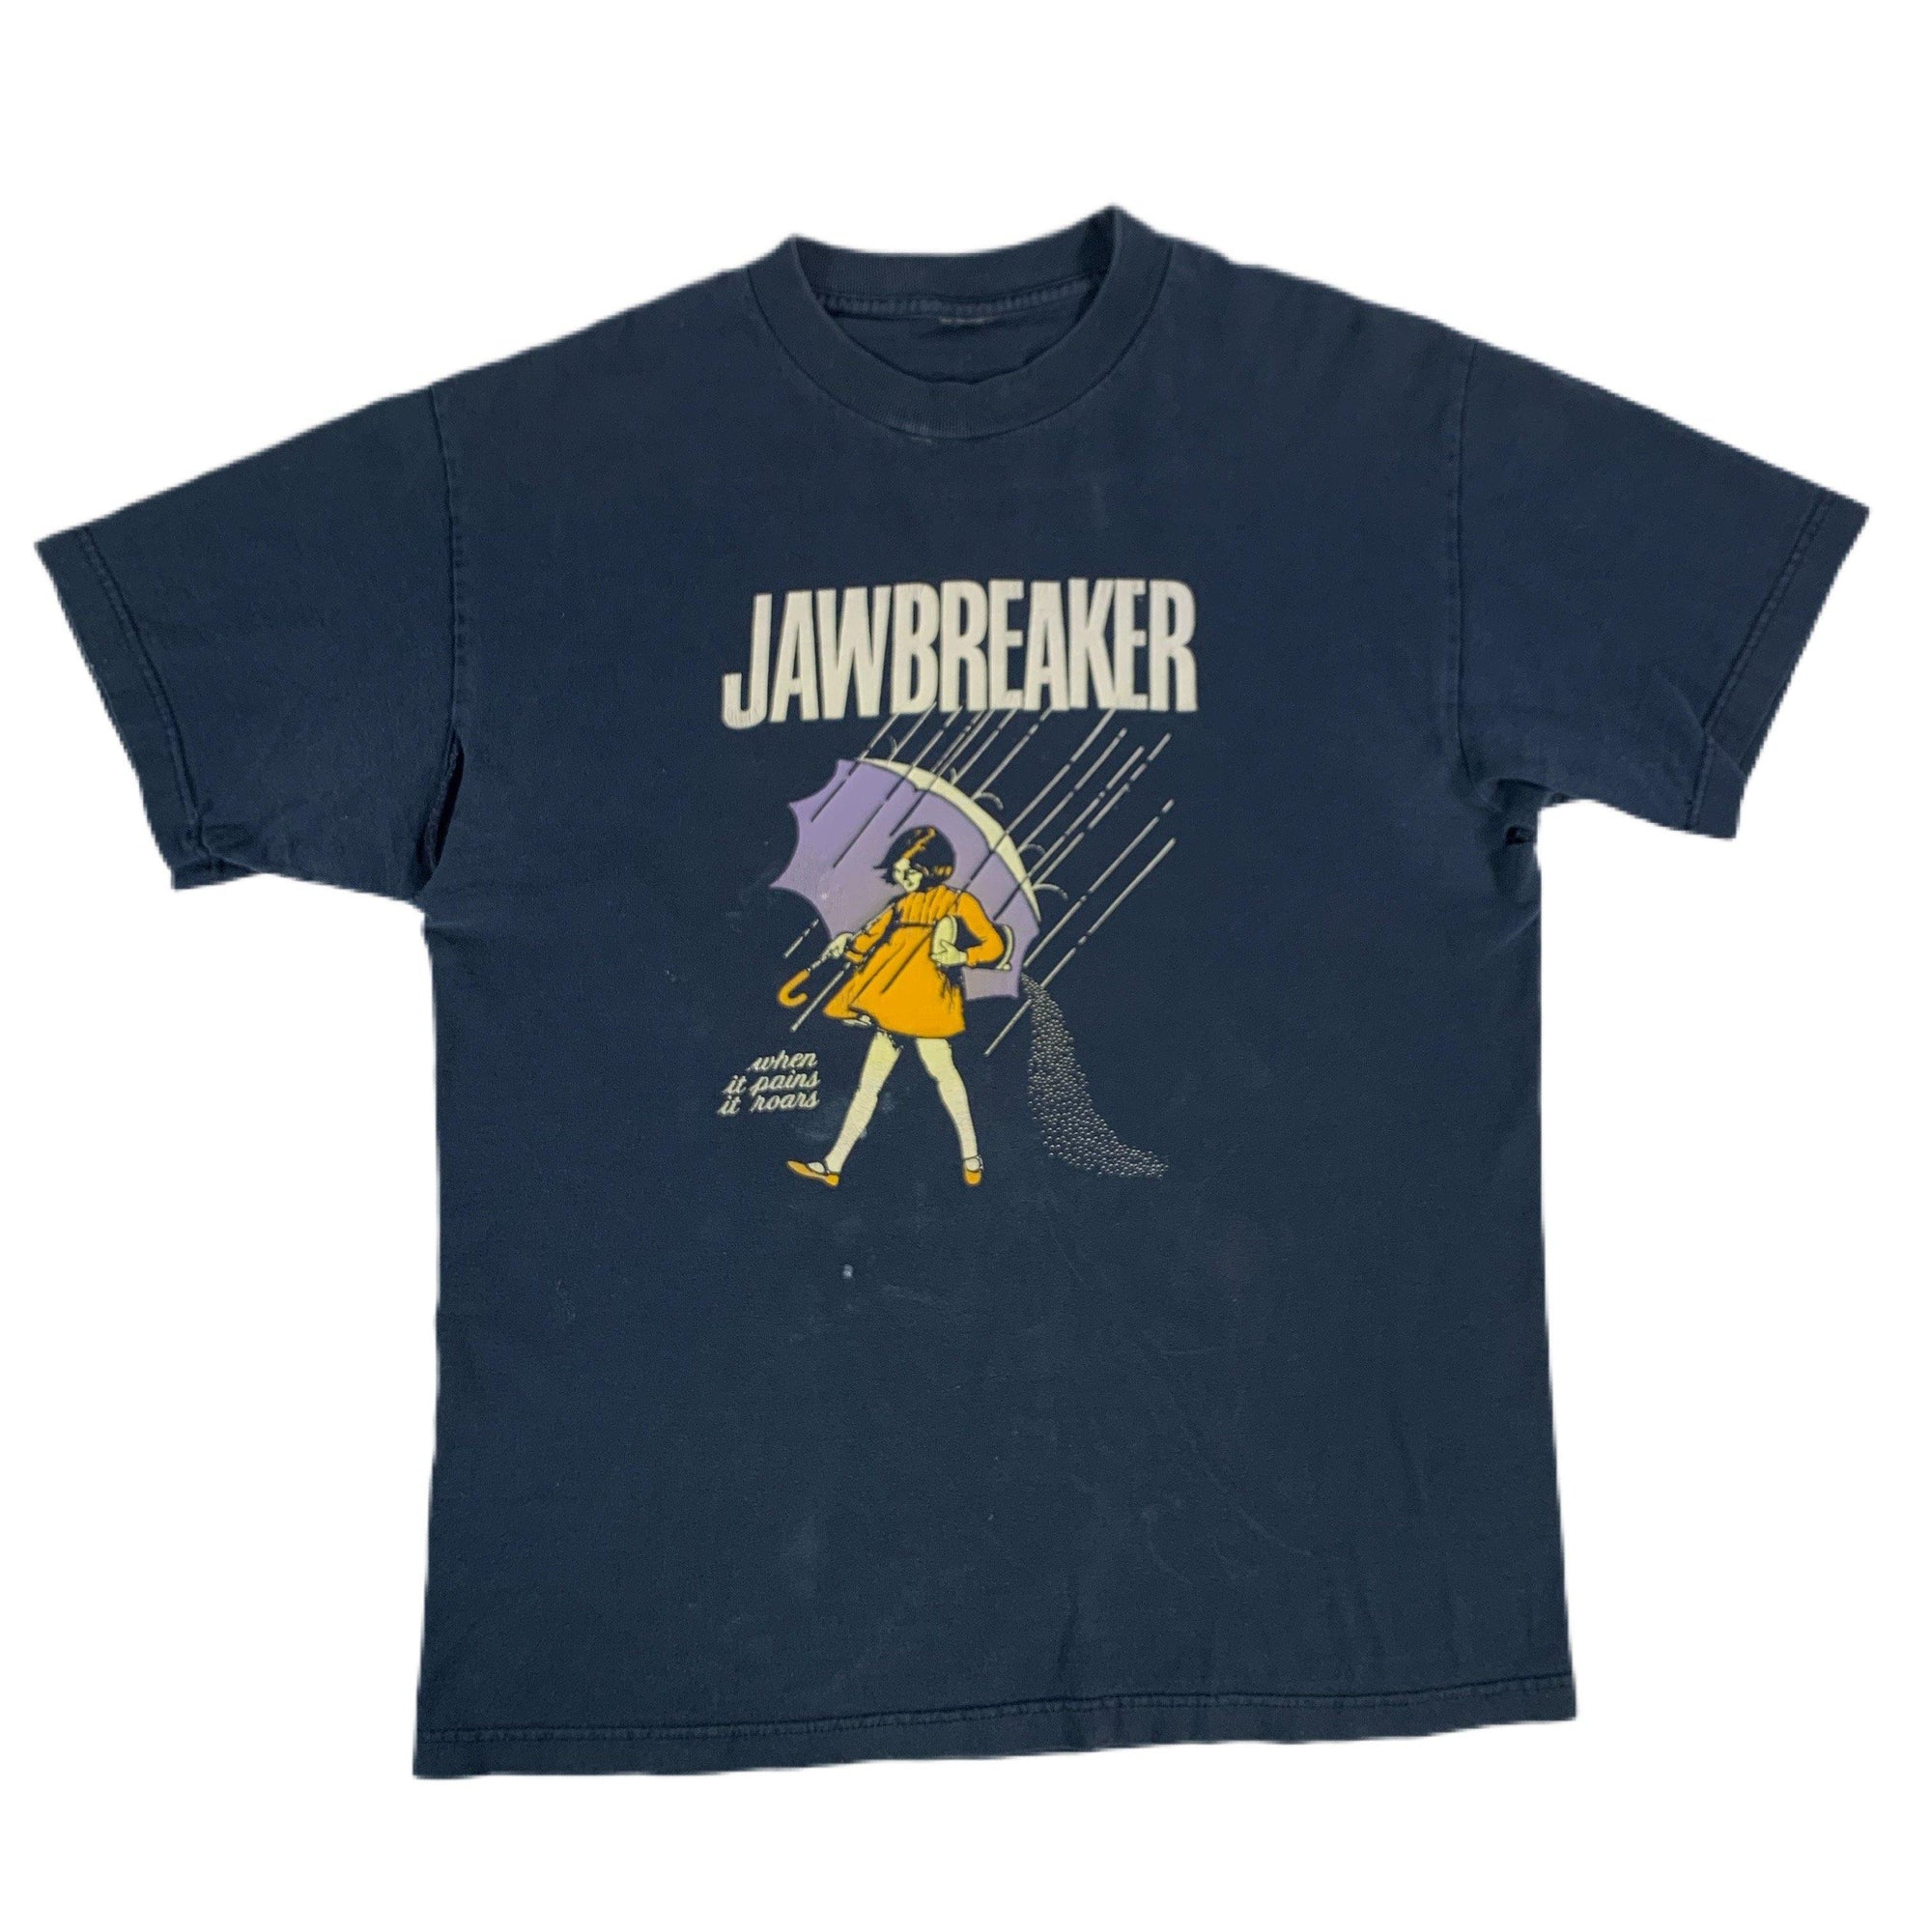 Vintage Jawbreaker "When It Pains It Roars" T-Shirt - jointcustodydc